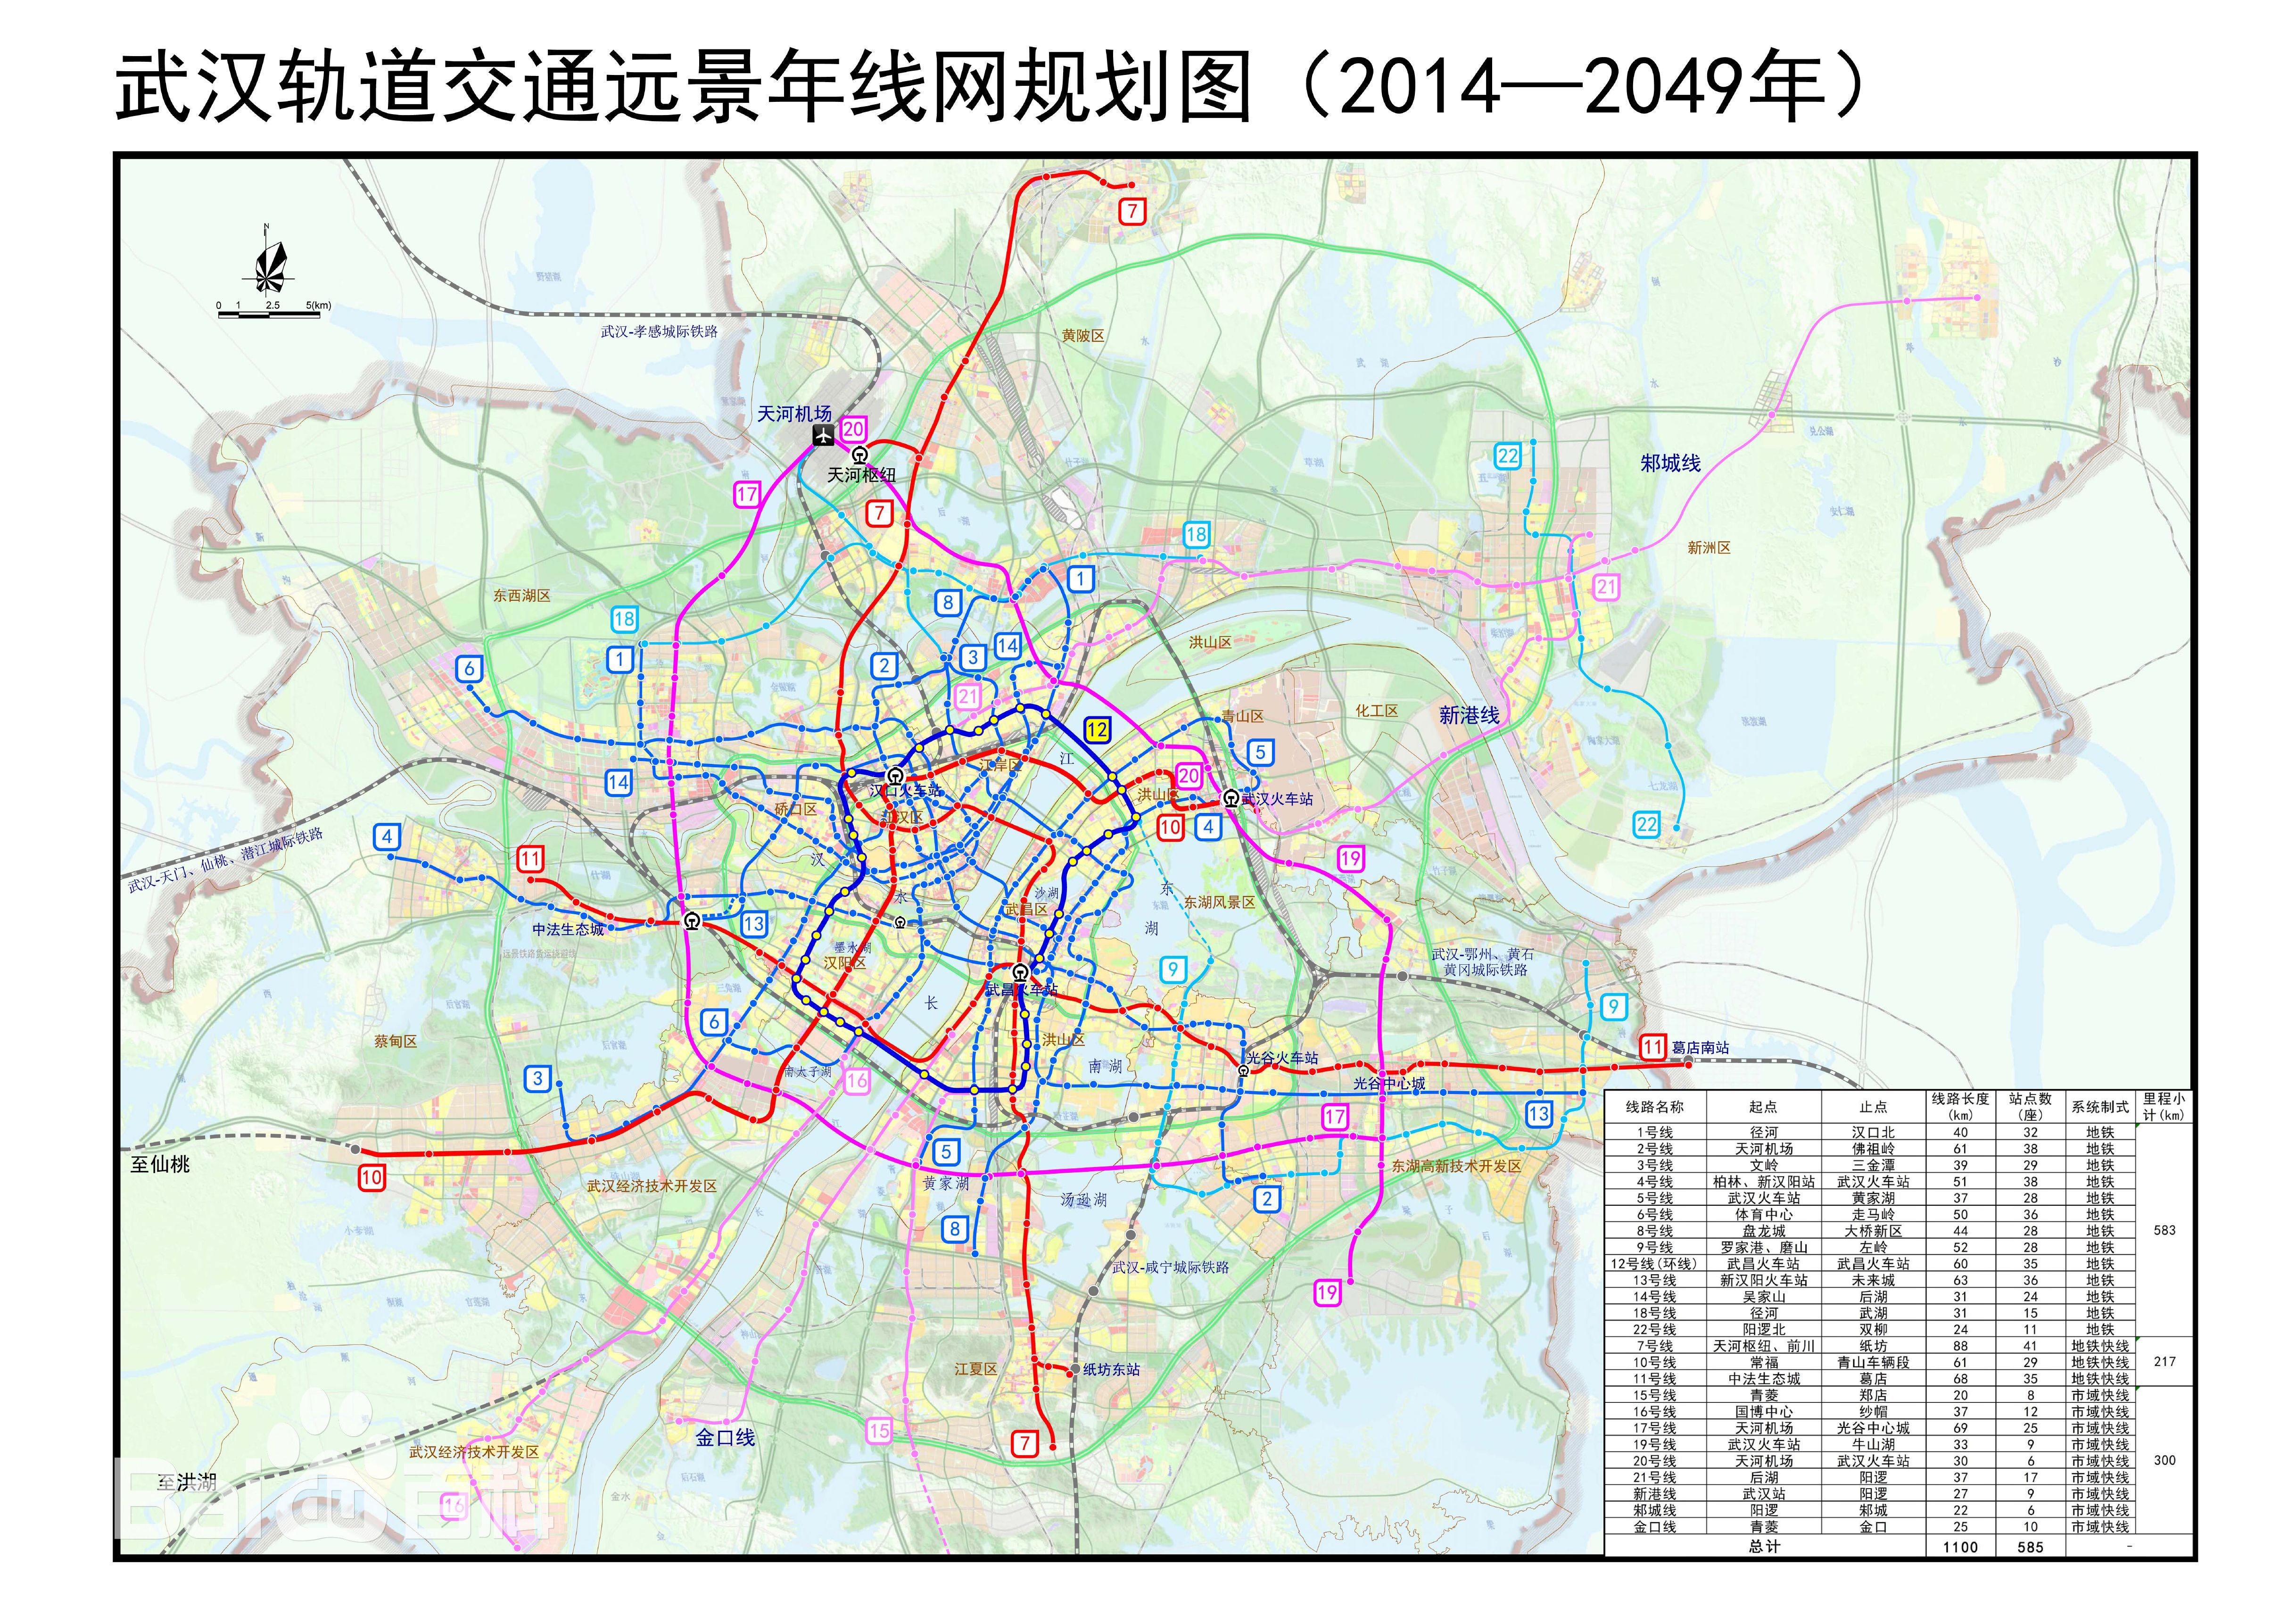 原创武汉在建最长的地铁线长325公里仅设站12座年底建成倒计时